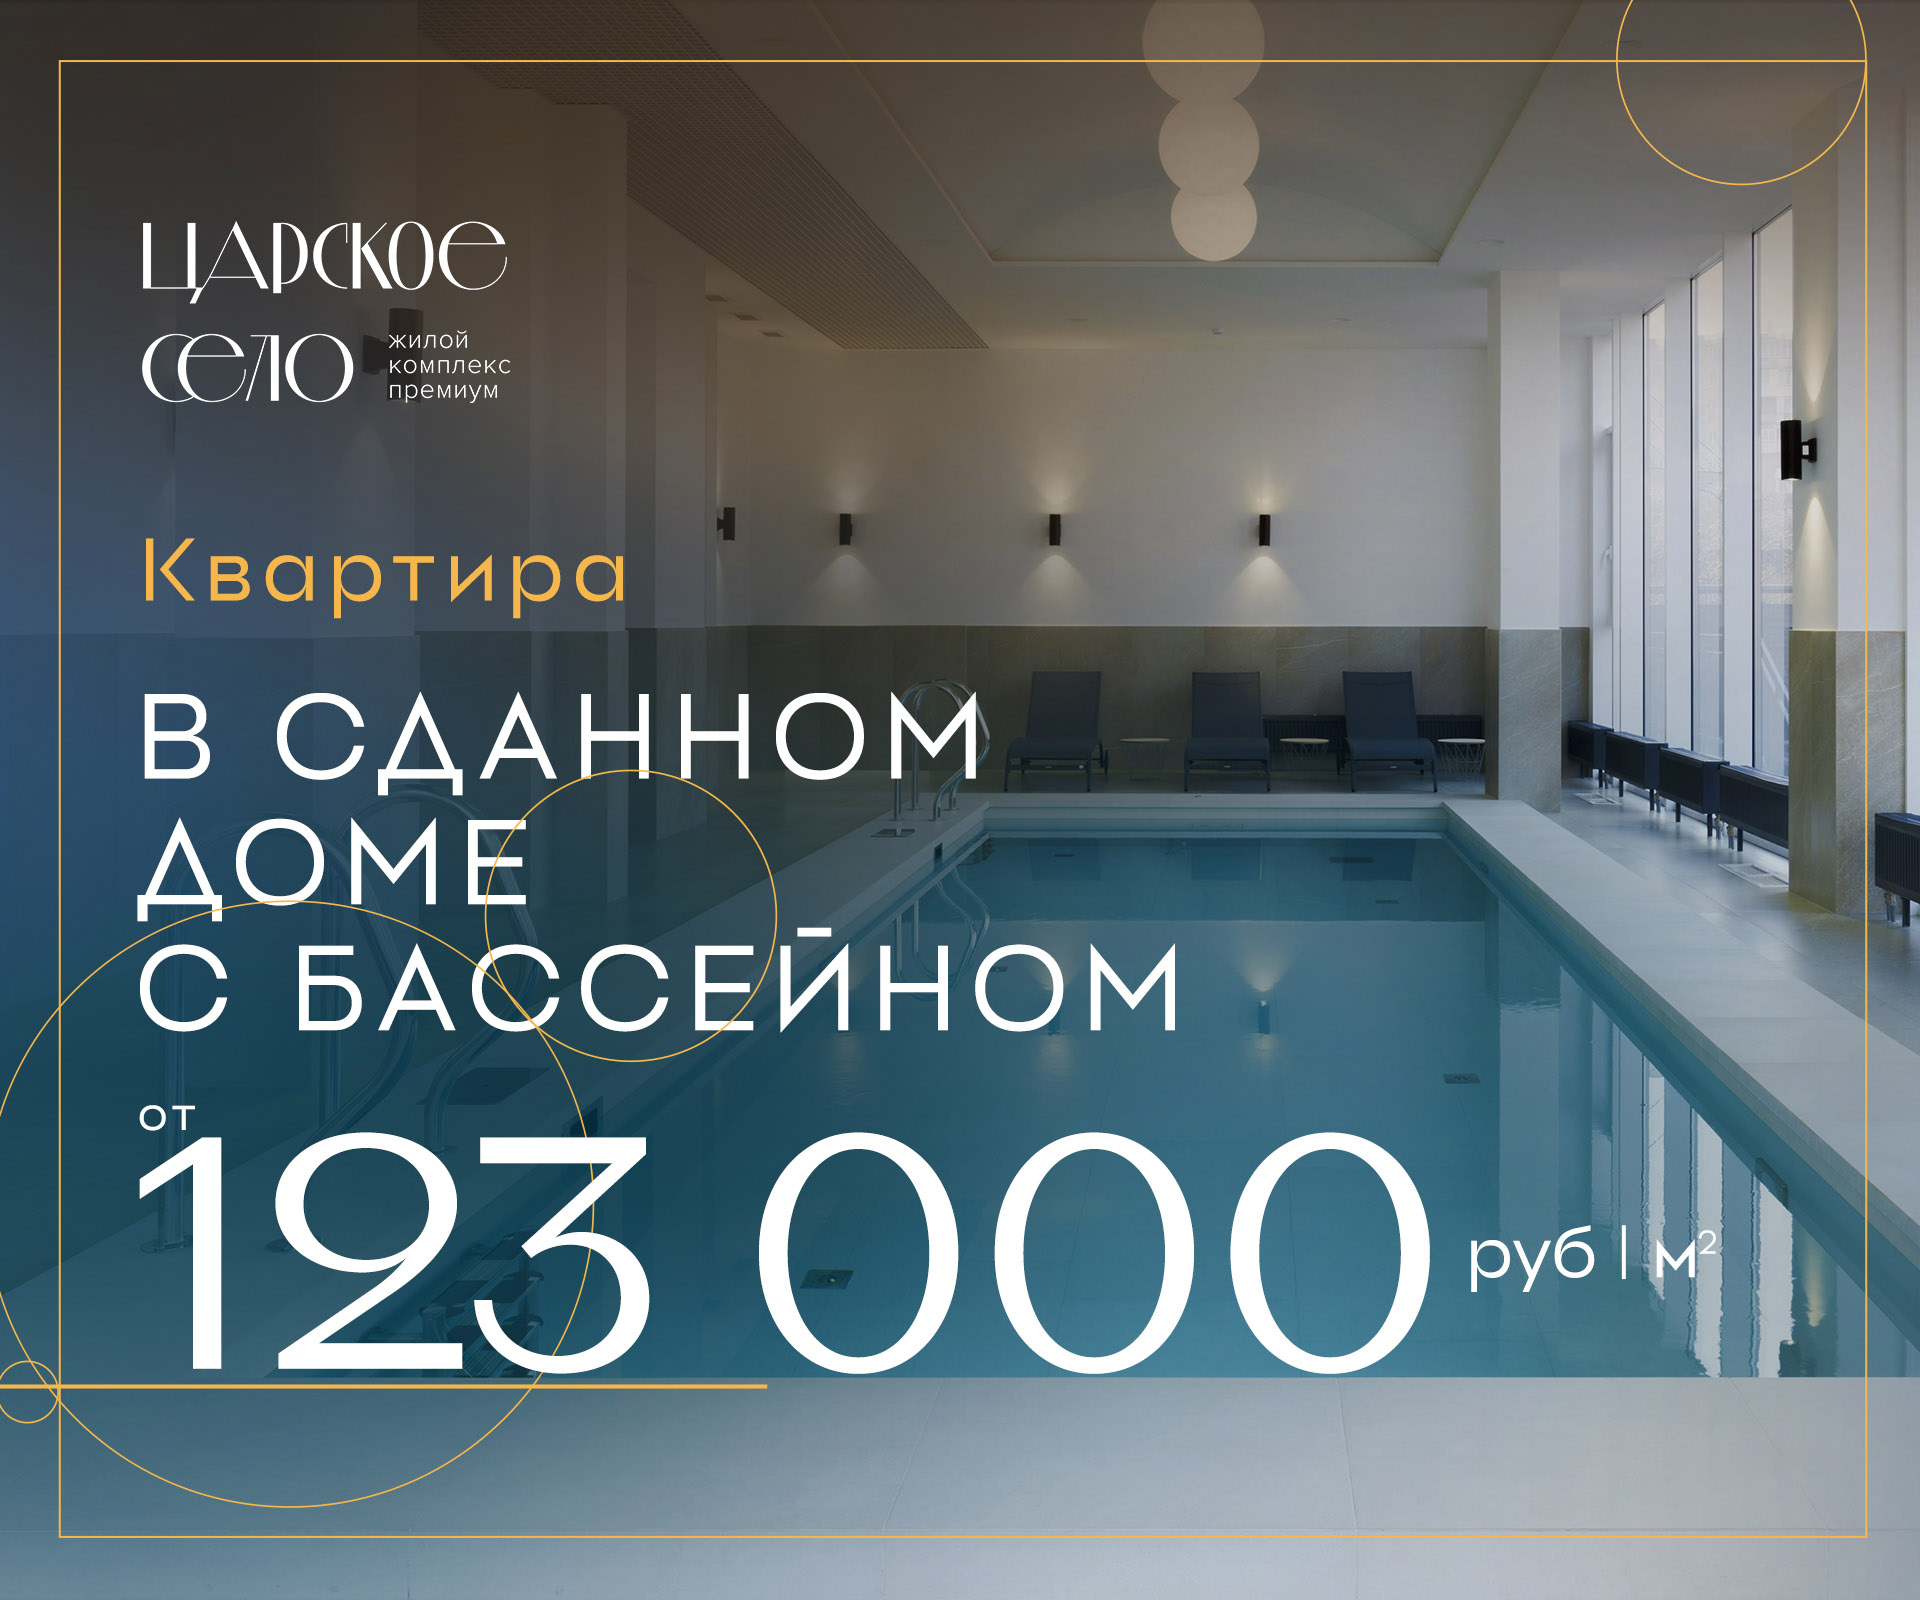 Квартира от 123 тысяч руб/кв.м. в сданном доме с бассейном!